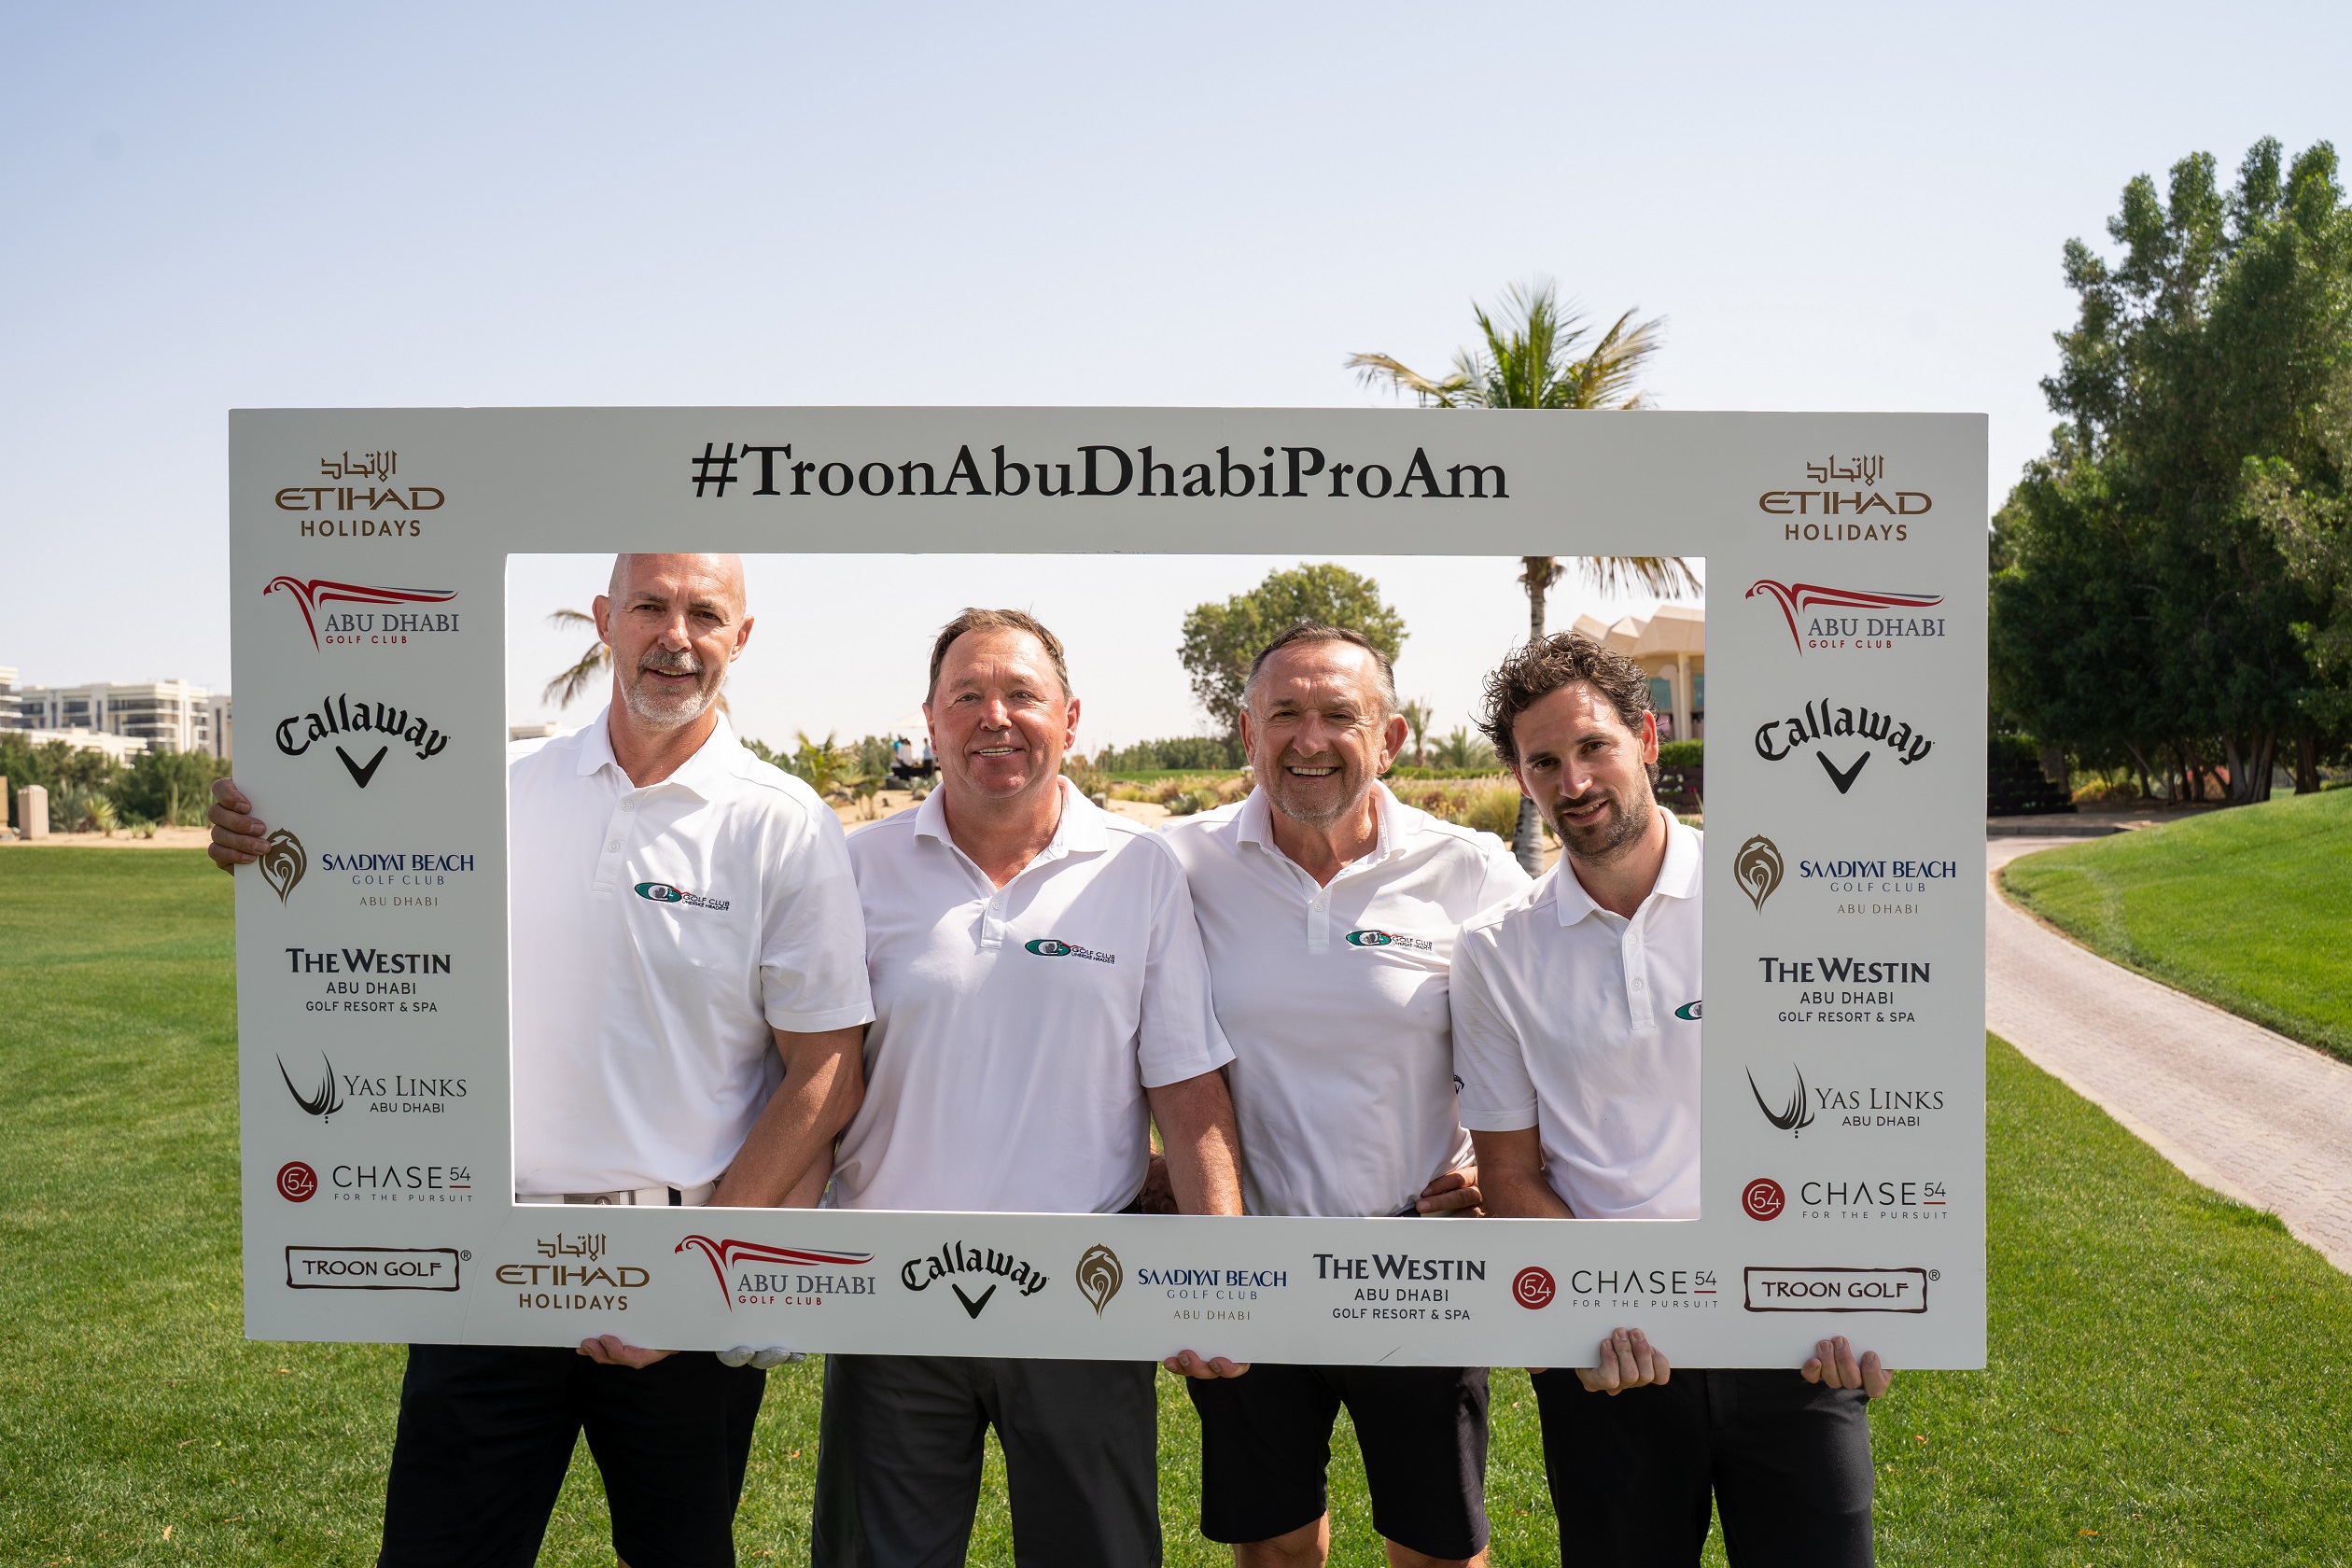 Troon Abu Dhabi Pro-Am participants